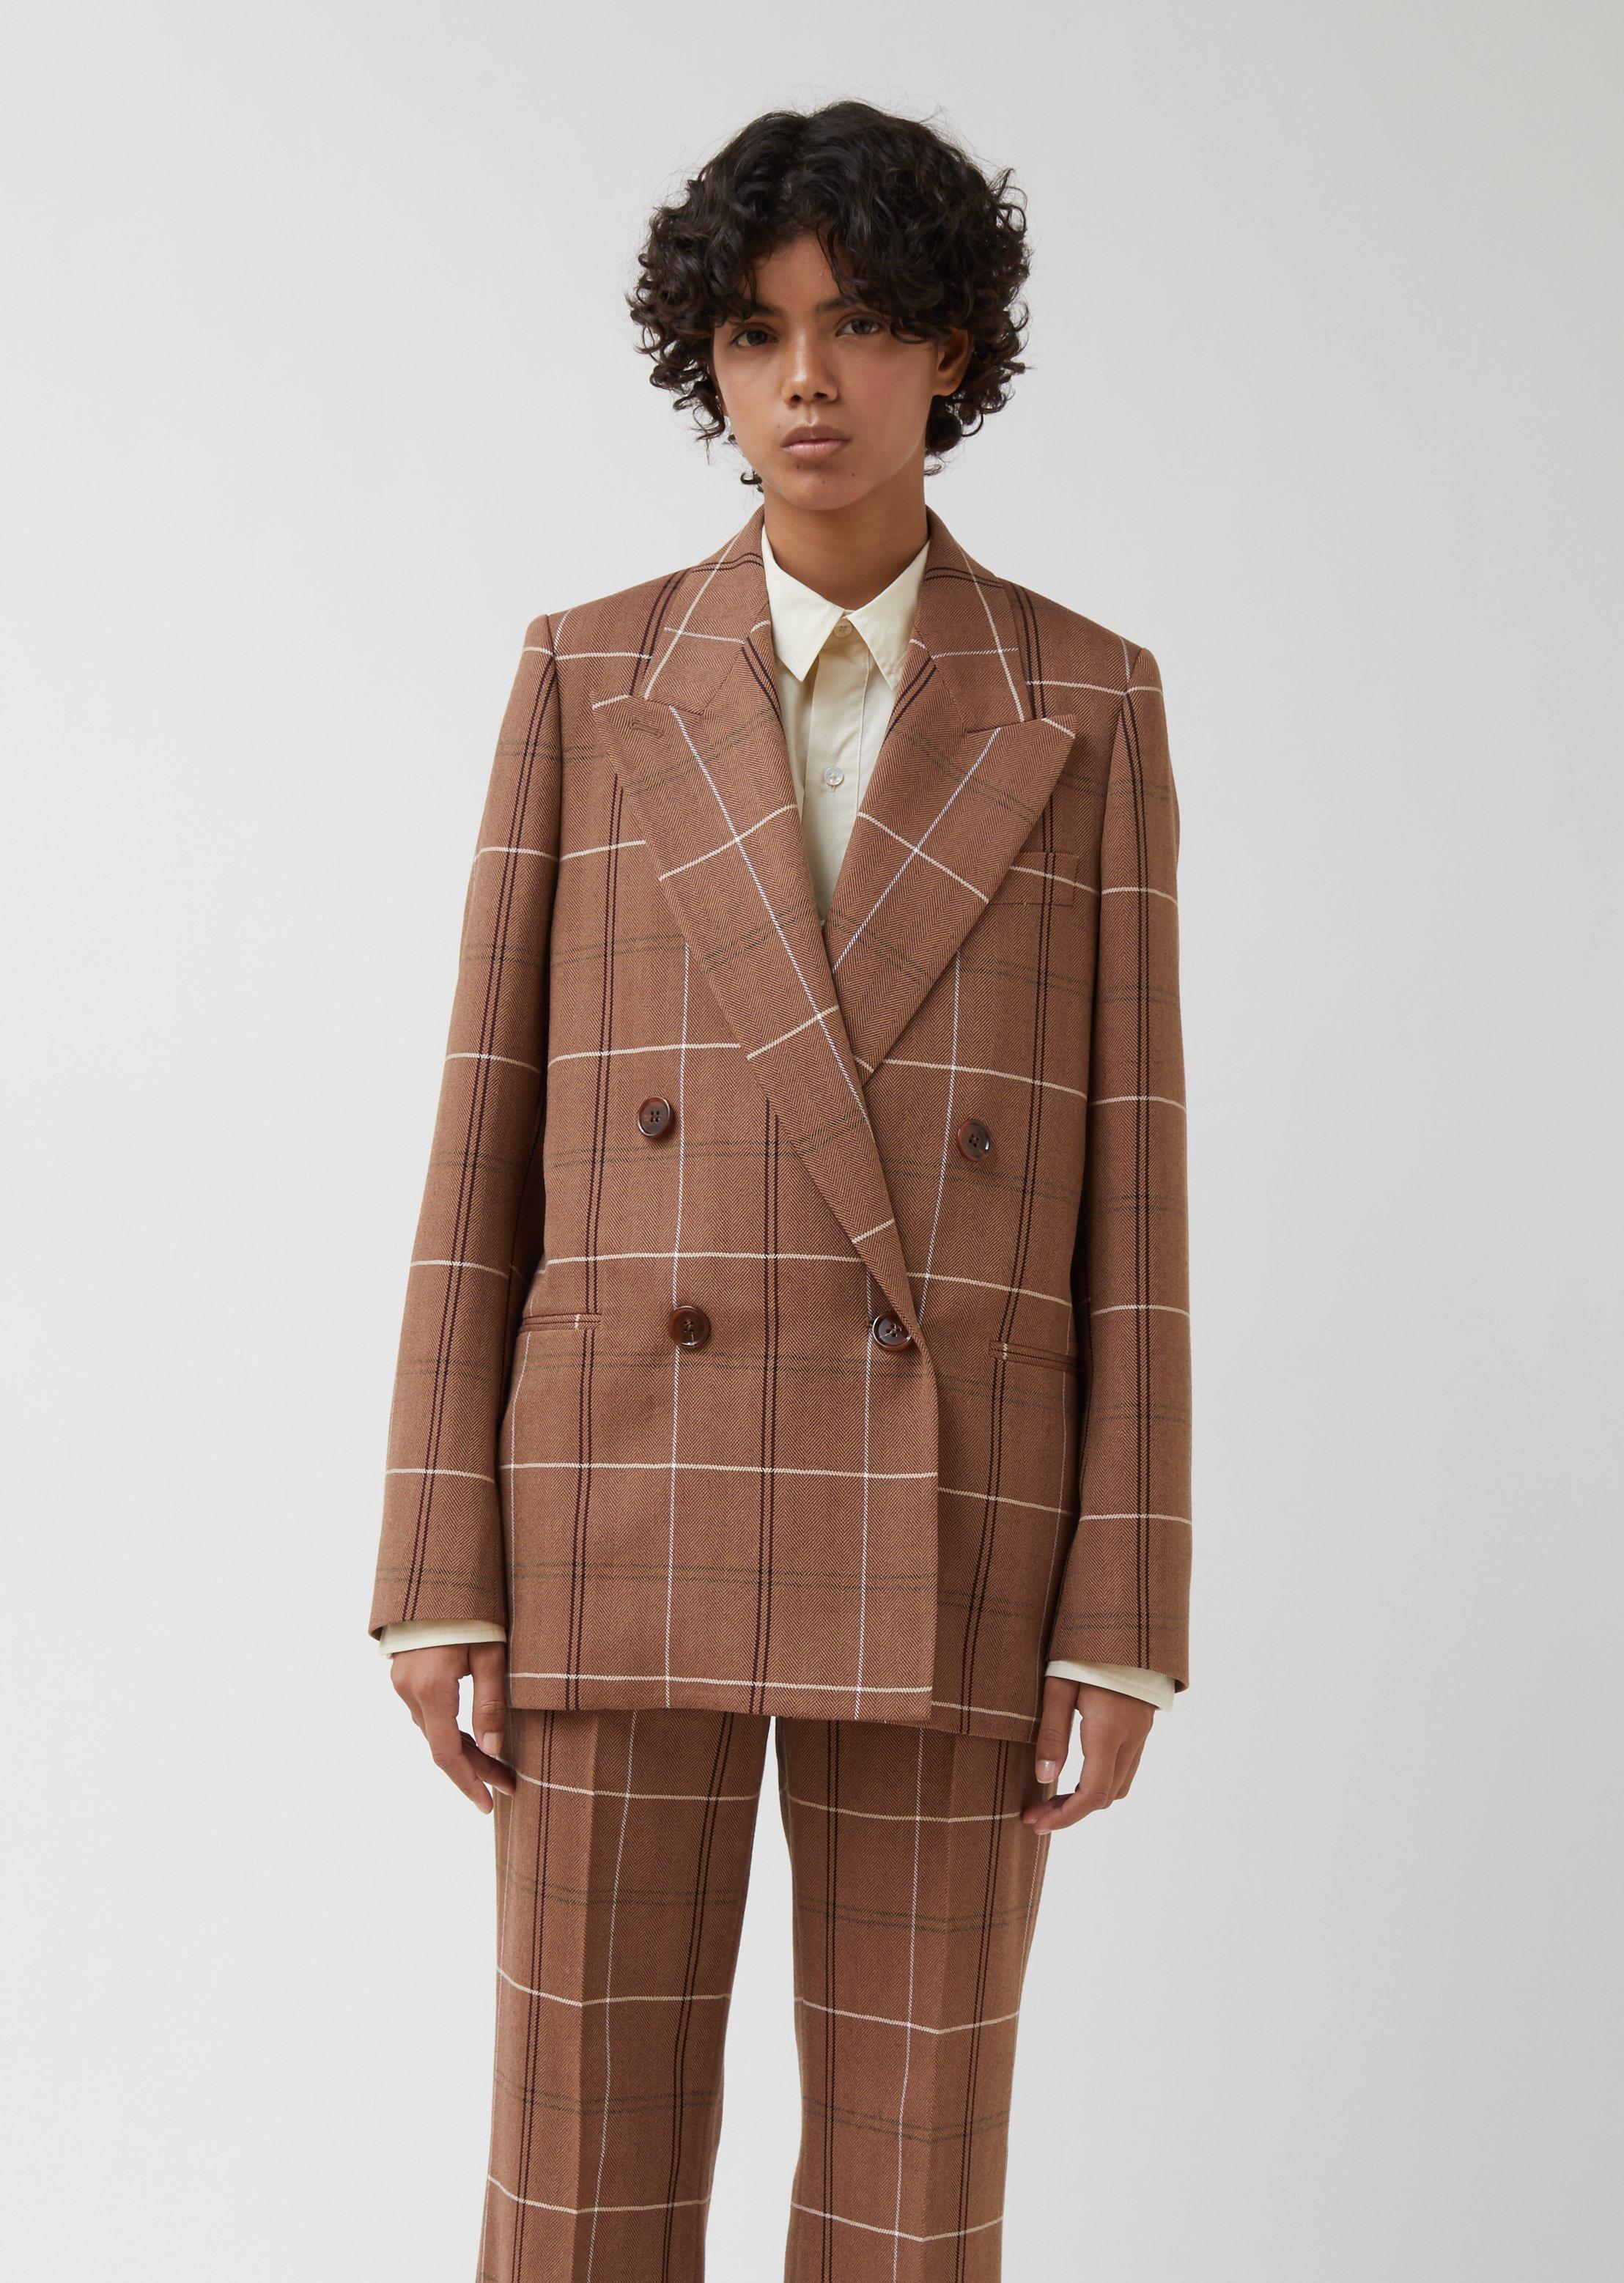 Acne Studios Wool Hb Suit Jacket in Brown & White (Brown) - Lyst